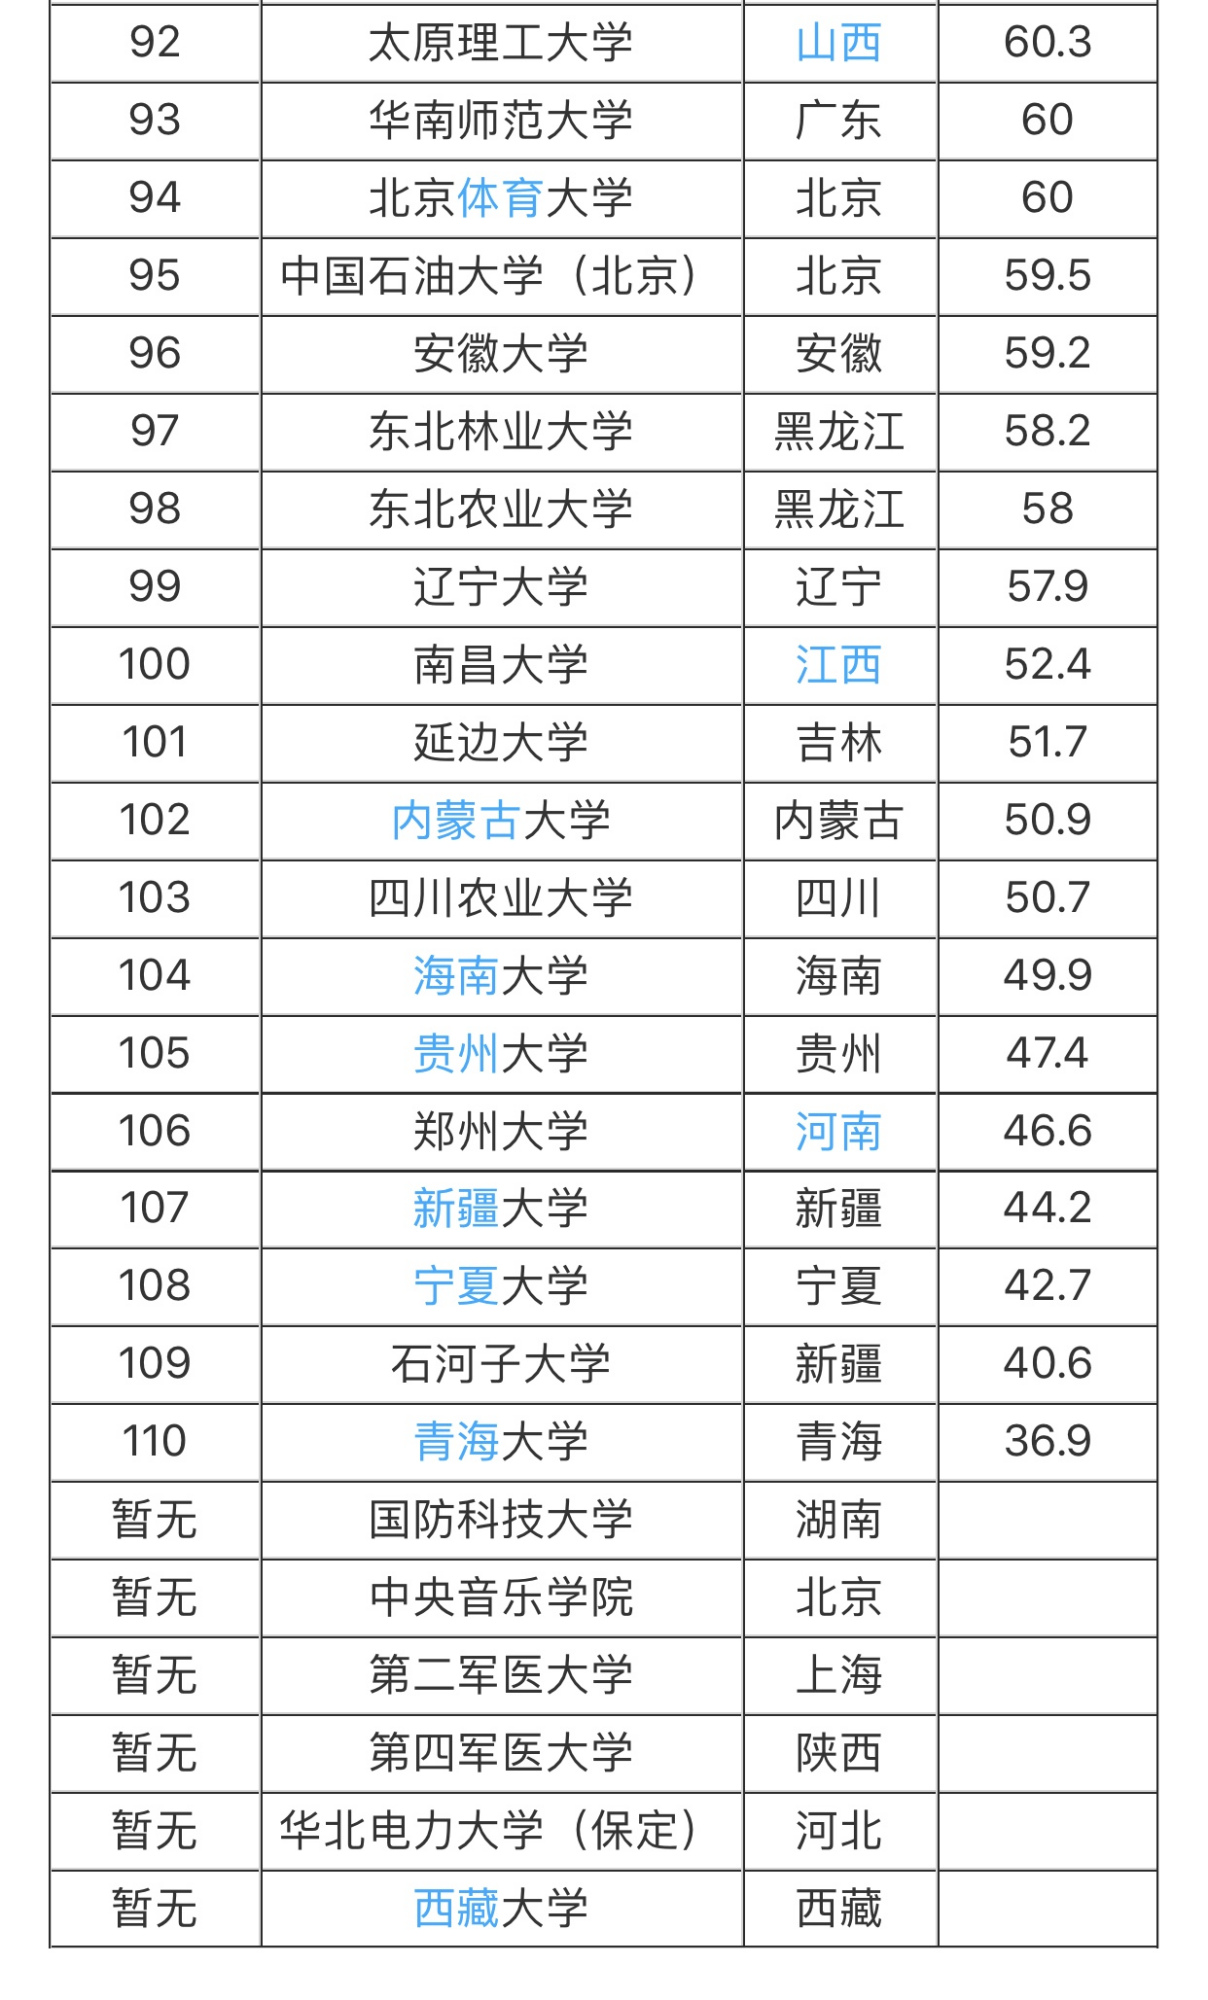 2019年十六中初一新生分班名单 - 福建省福州第十六中学